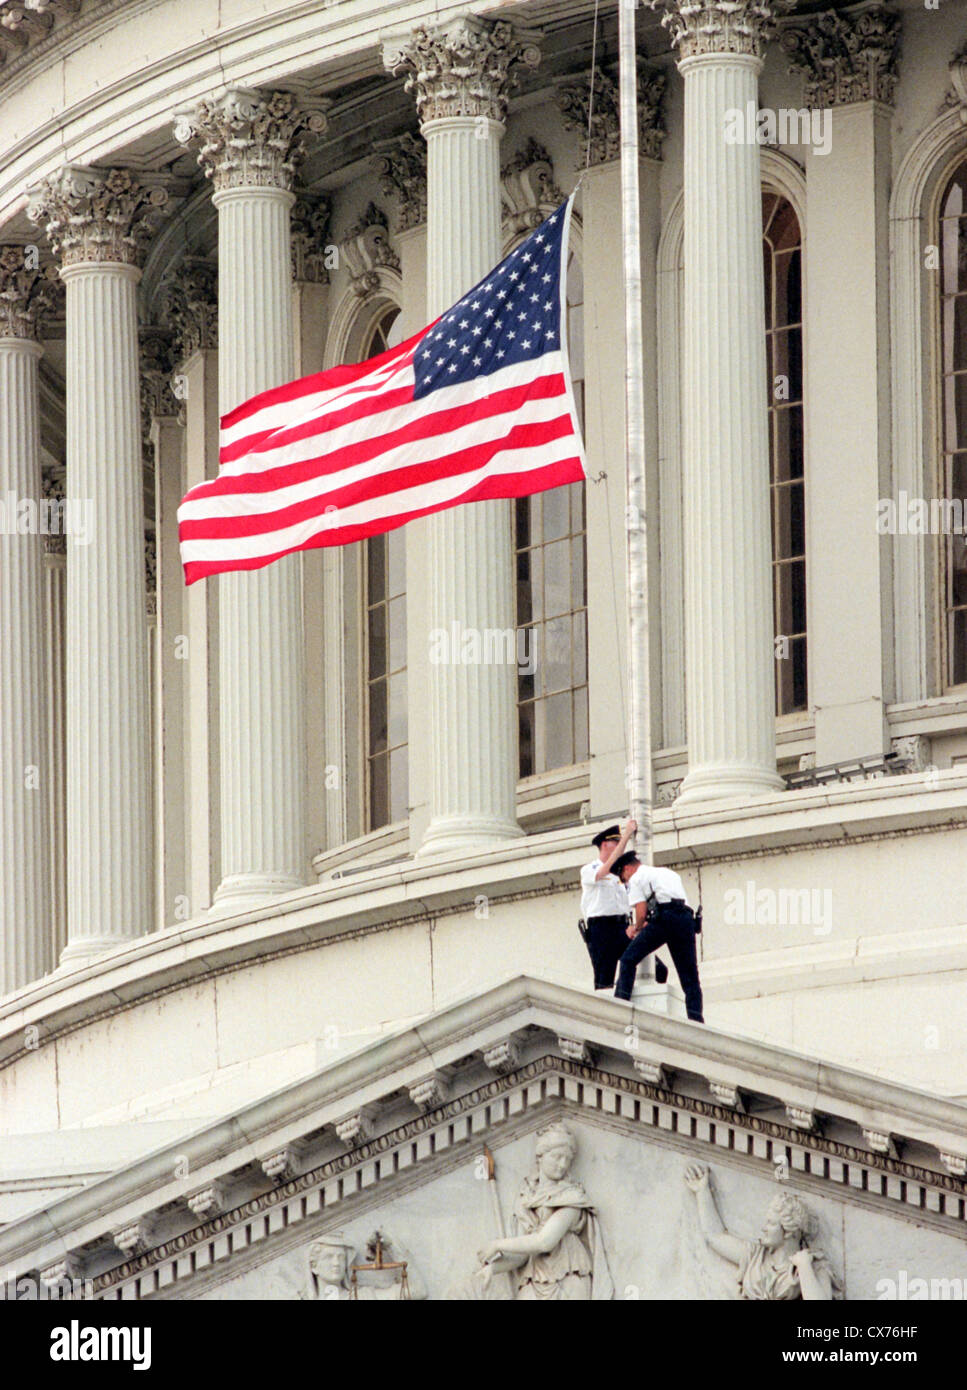 Capitole descendre le drapeau à Berne à la suite d'une fusillade qui a fait deux morts le 24 juillet 1998 à Washington, DC. Deux Capitole policiers ont été tués dans l'incident, une personne blessée et les tireurs isolés a été blessé et arrêté. Banque D'Images